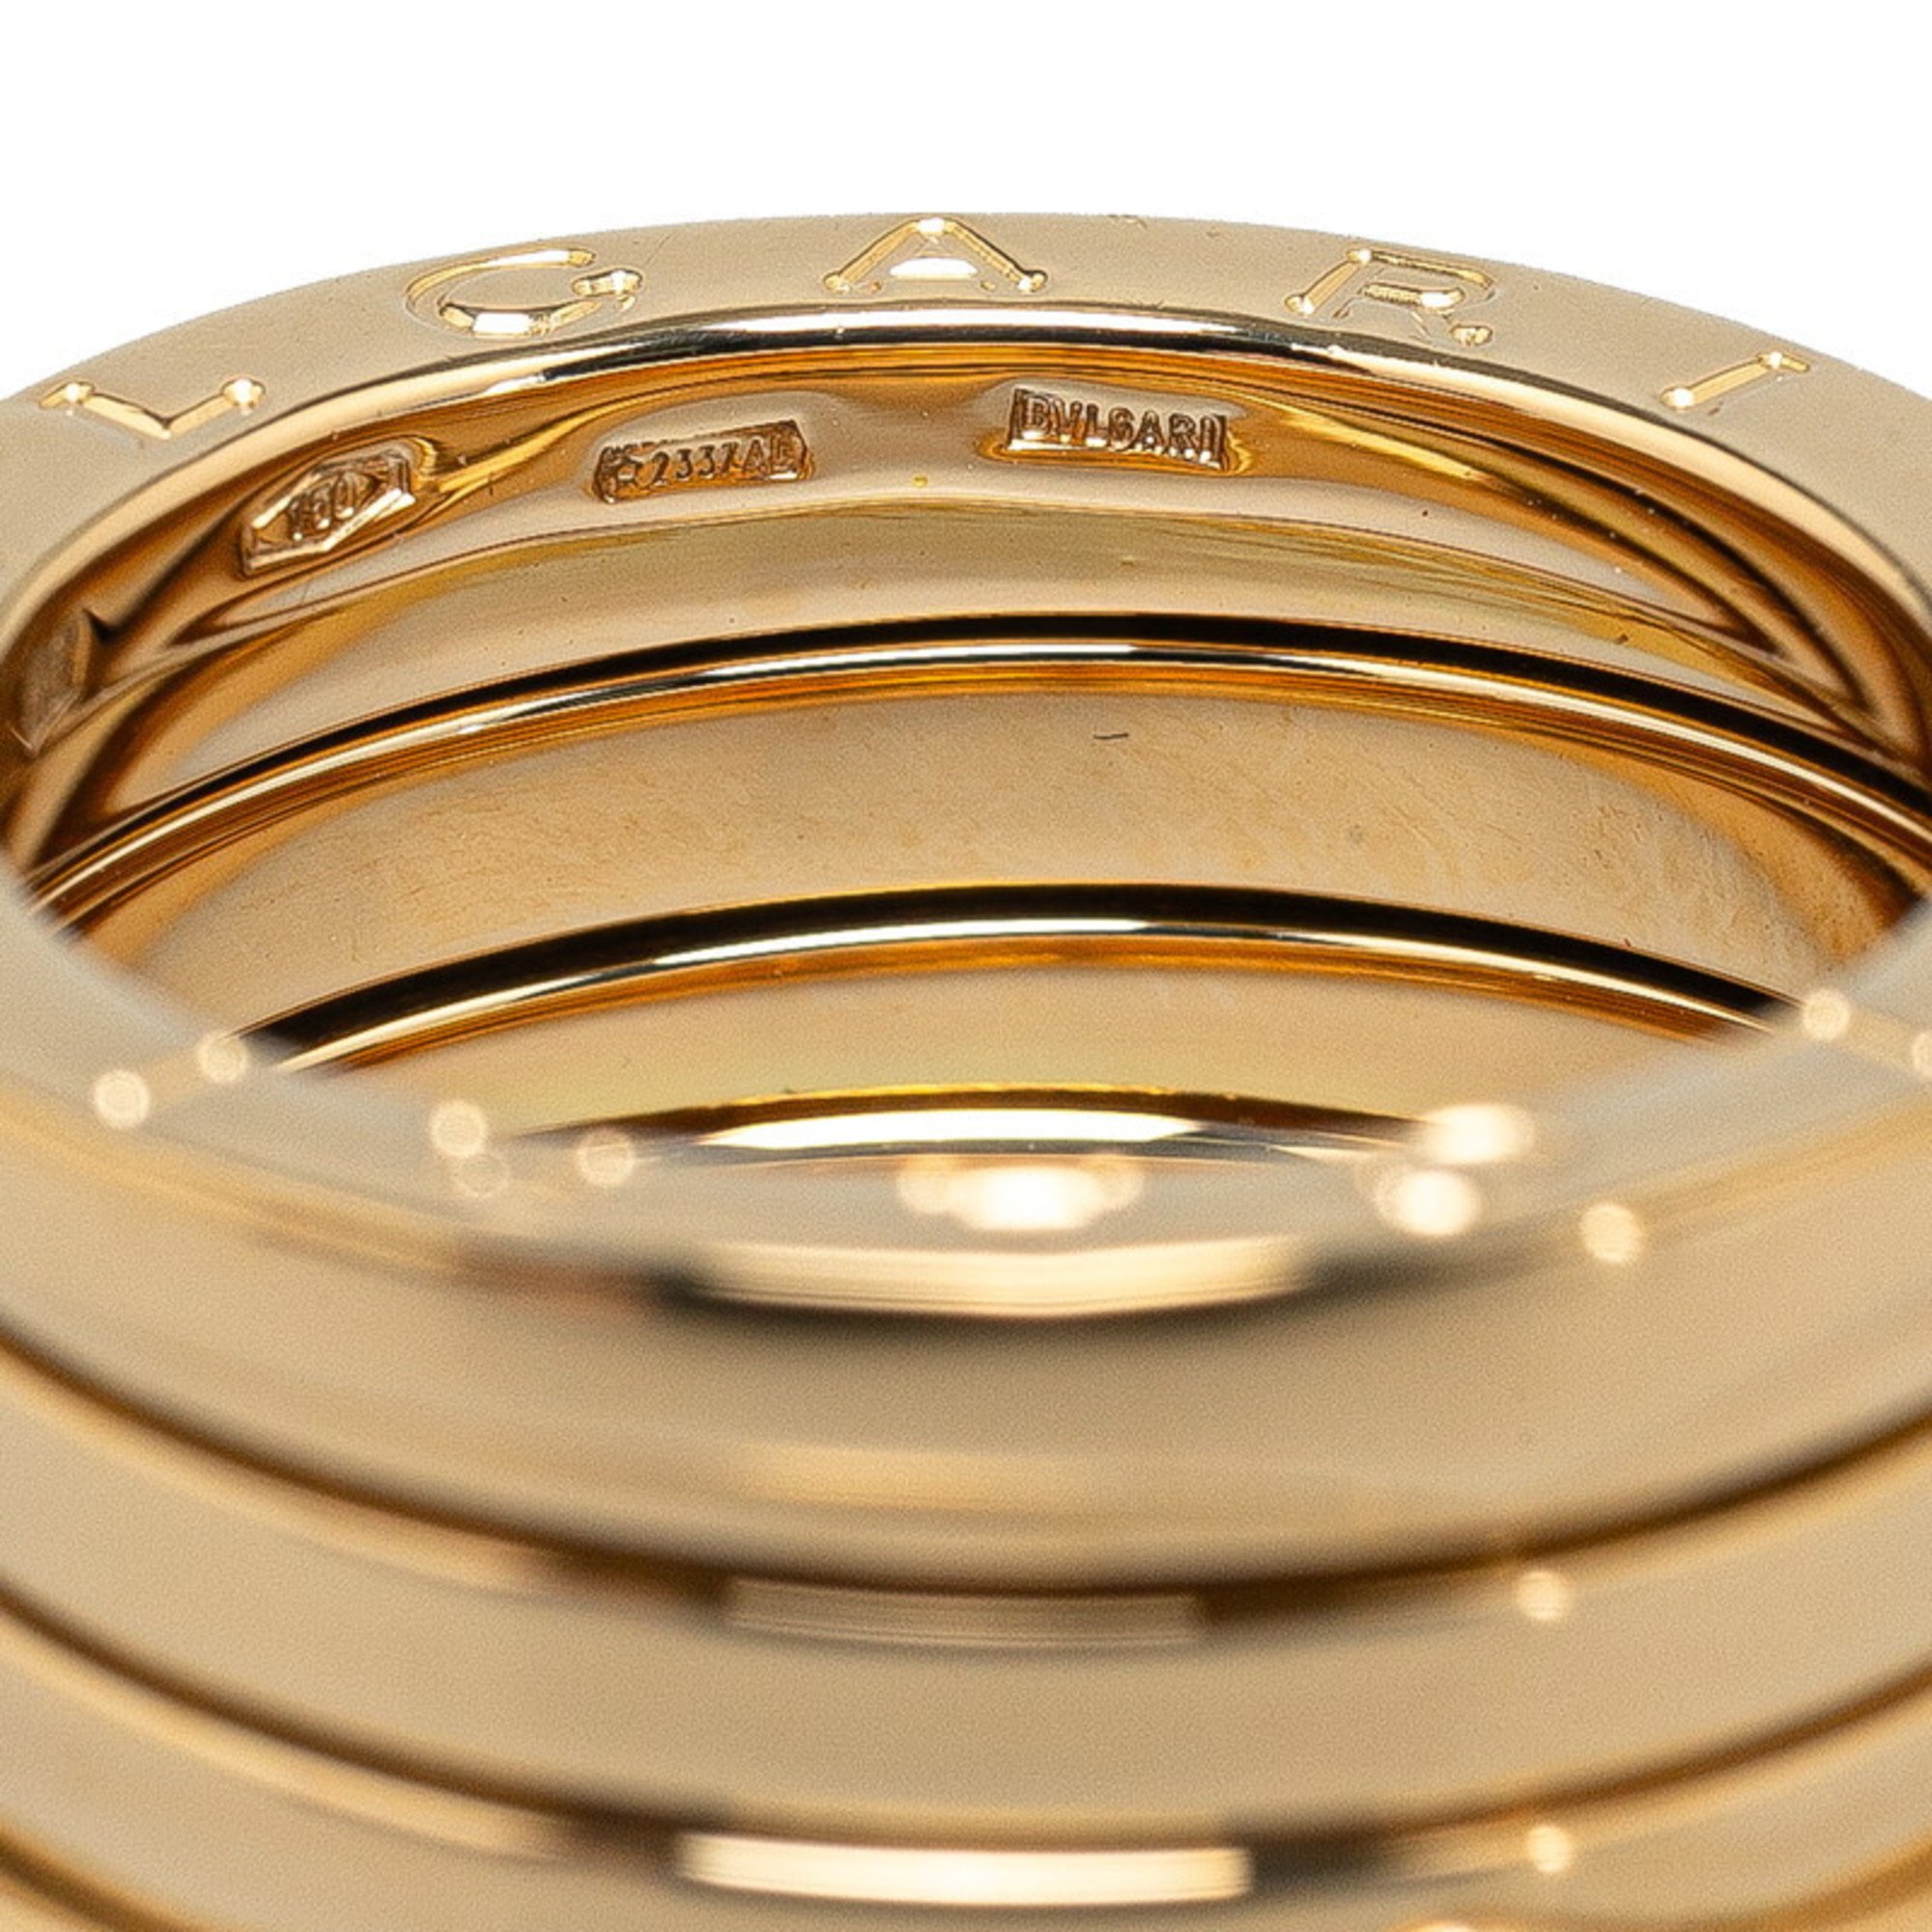 BVLGARI B.zero1 4-band ring #52 K18YG Yellow gold for women